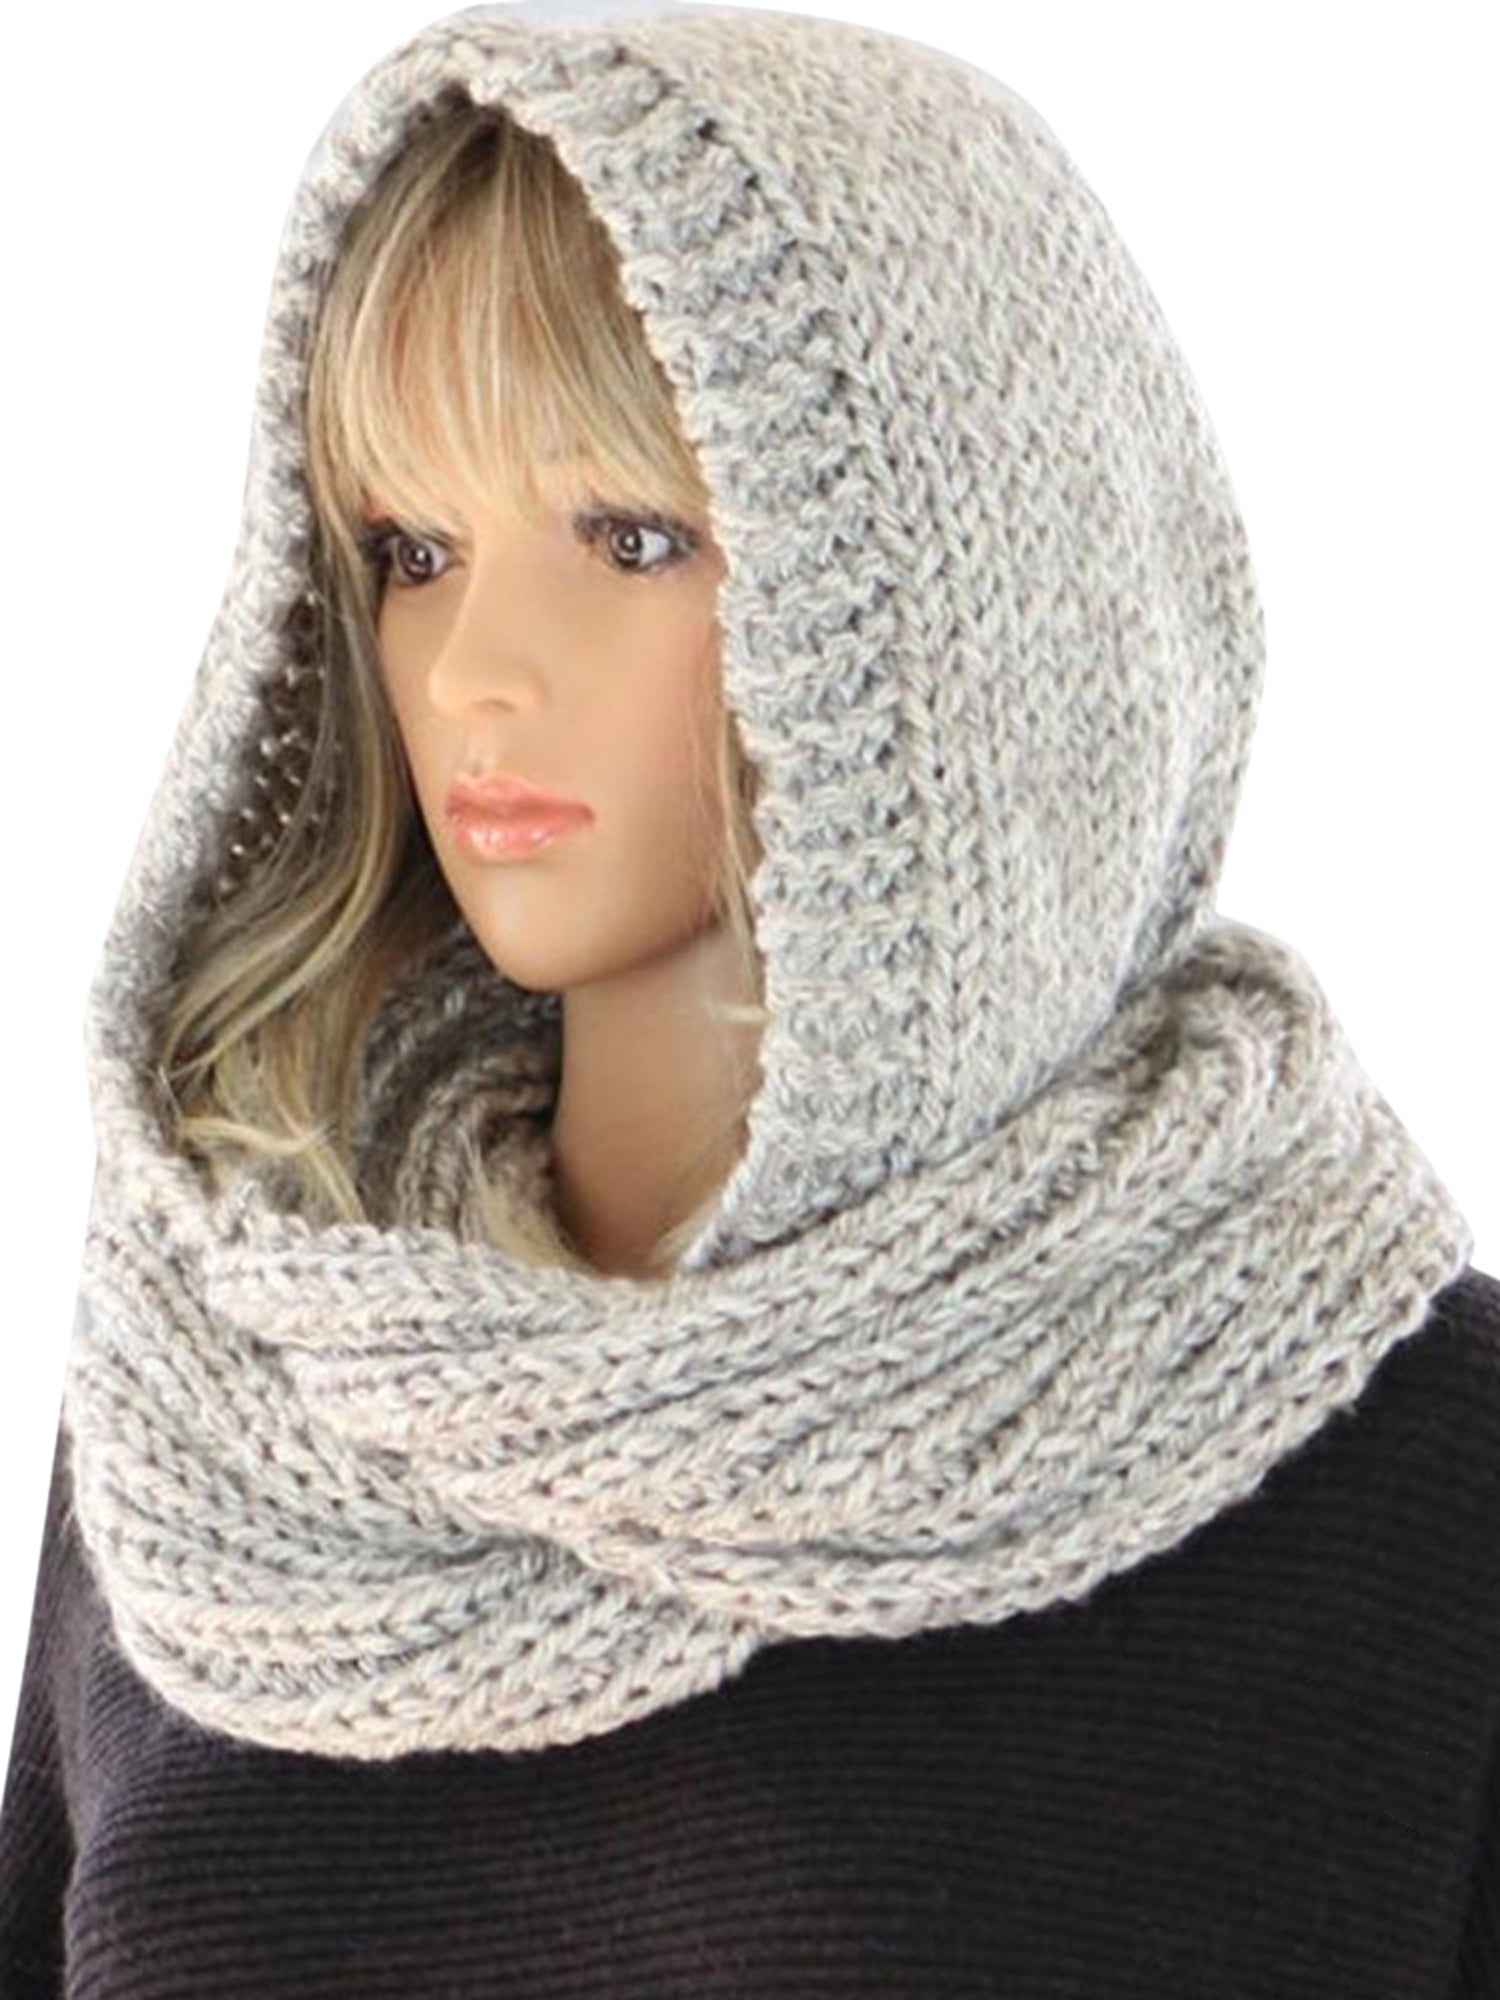 LEADOKOAS Women Winter Knitted Hood Scarf Hat Neck Warmer Ladies